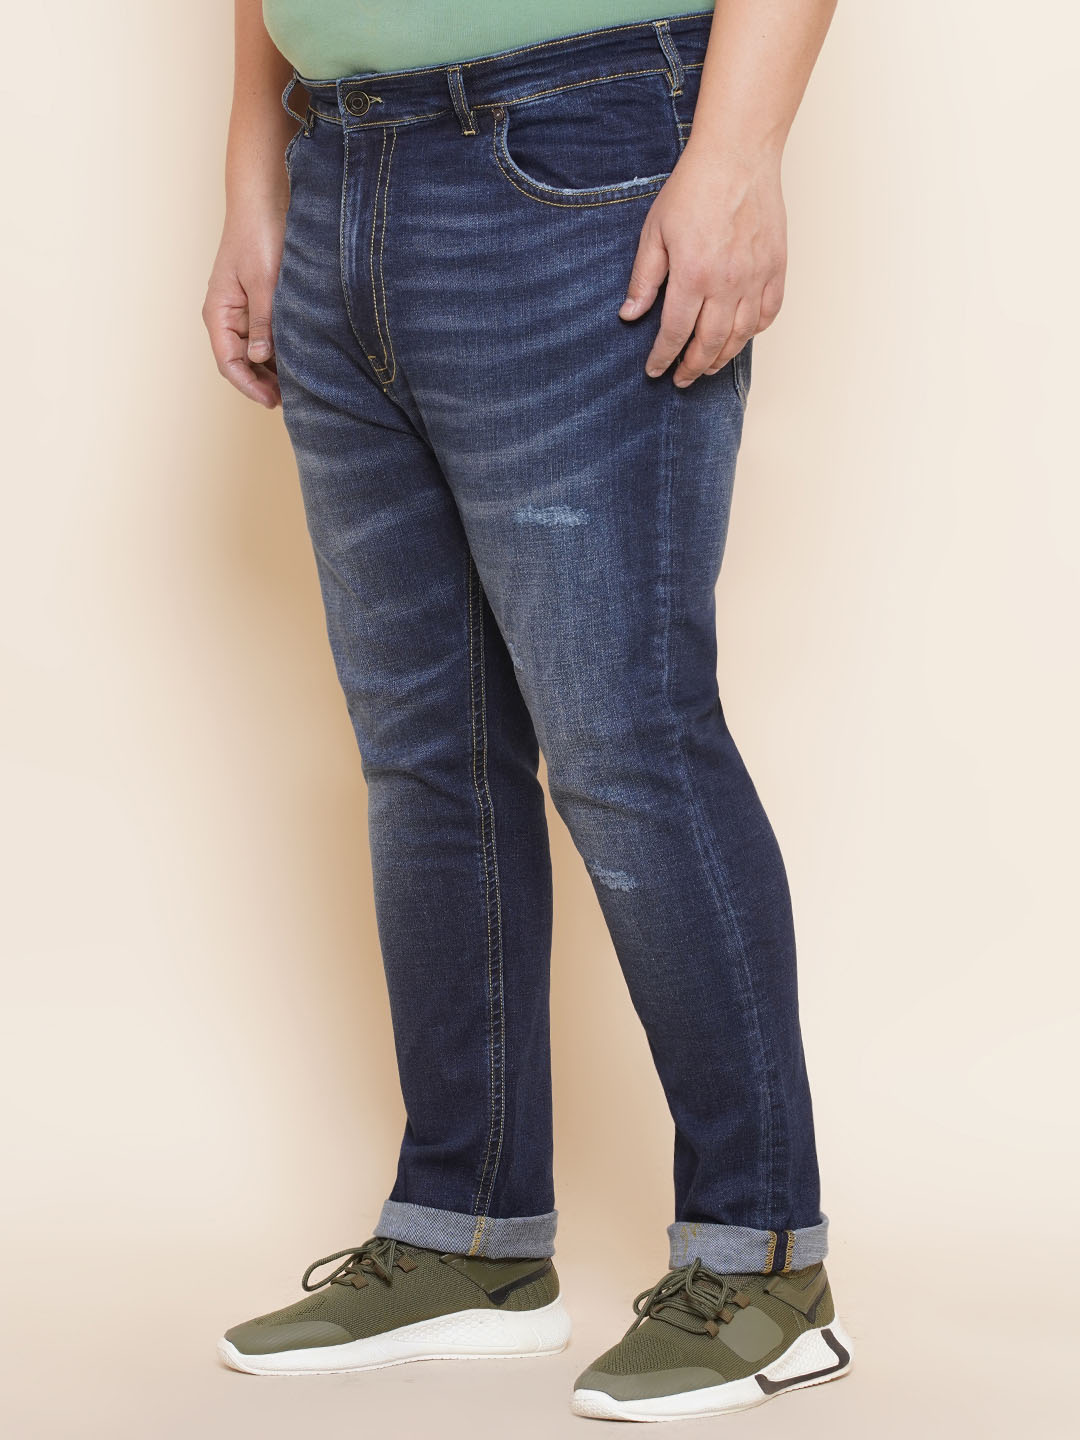 bottomwear/jeans/JPJ12297/jpj12297-4.jpg